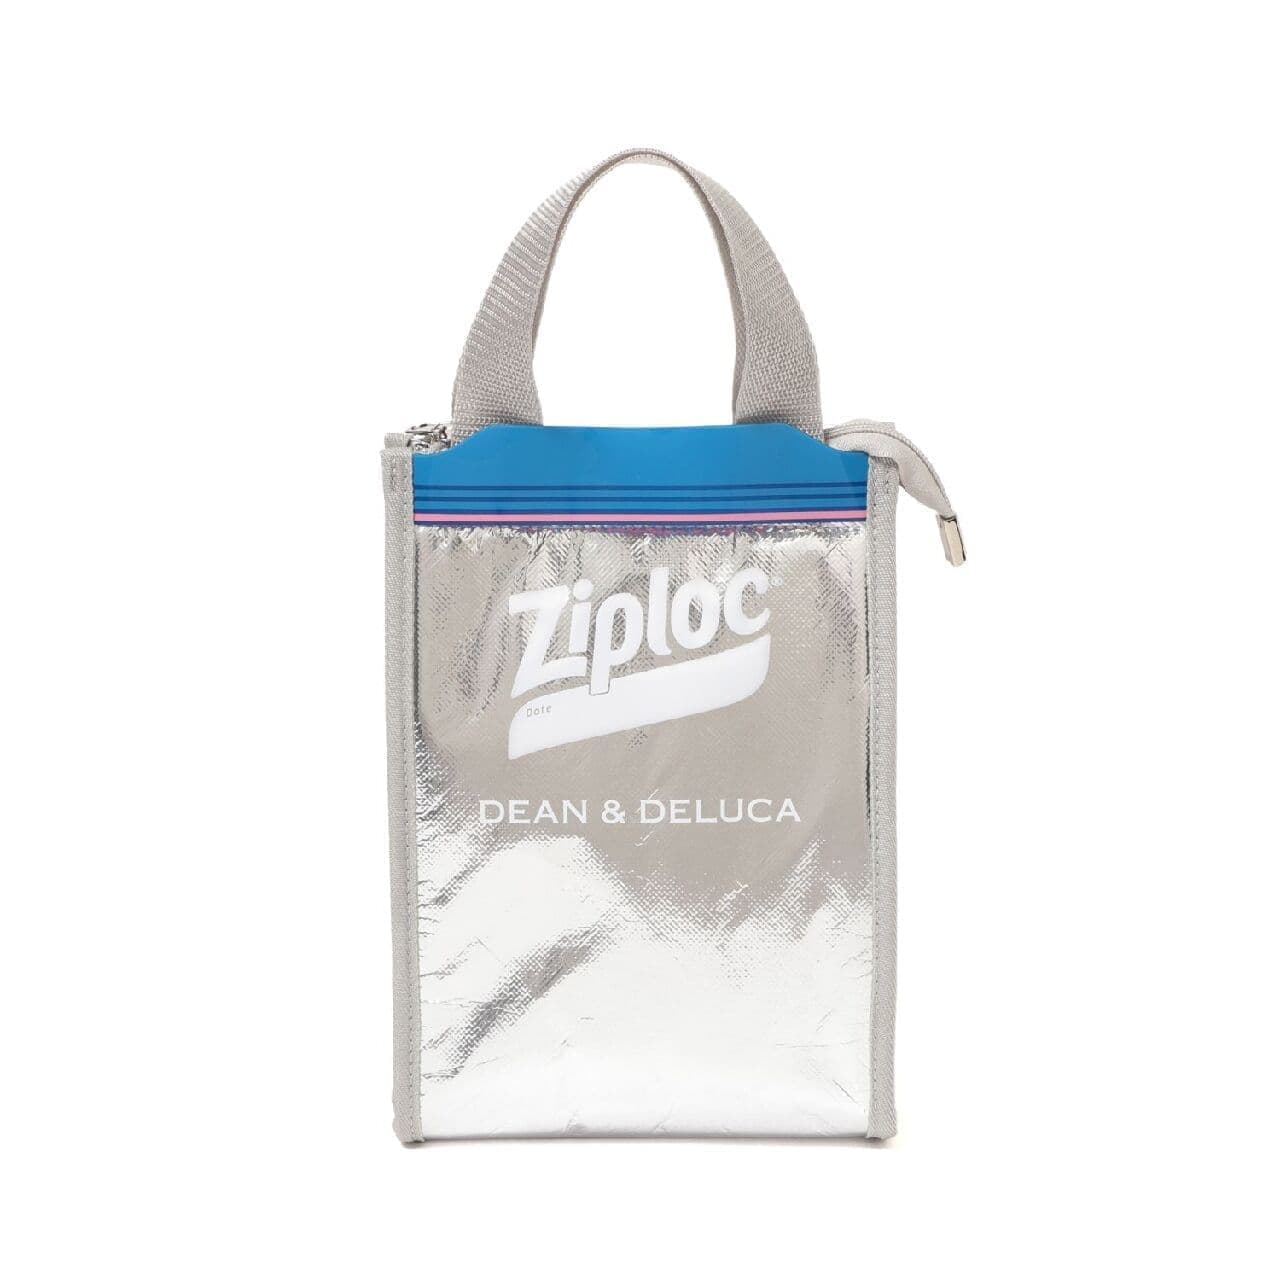 1日で完売したZiplocクーラーバッグが改良新発売 -- DEAN & DELUCA×BEAMS COUTUREとのトリプルコラボ